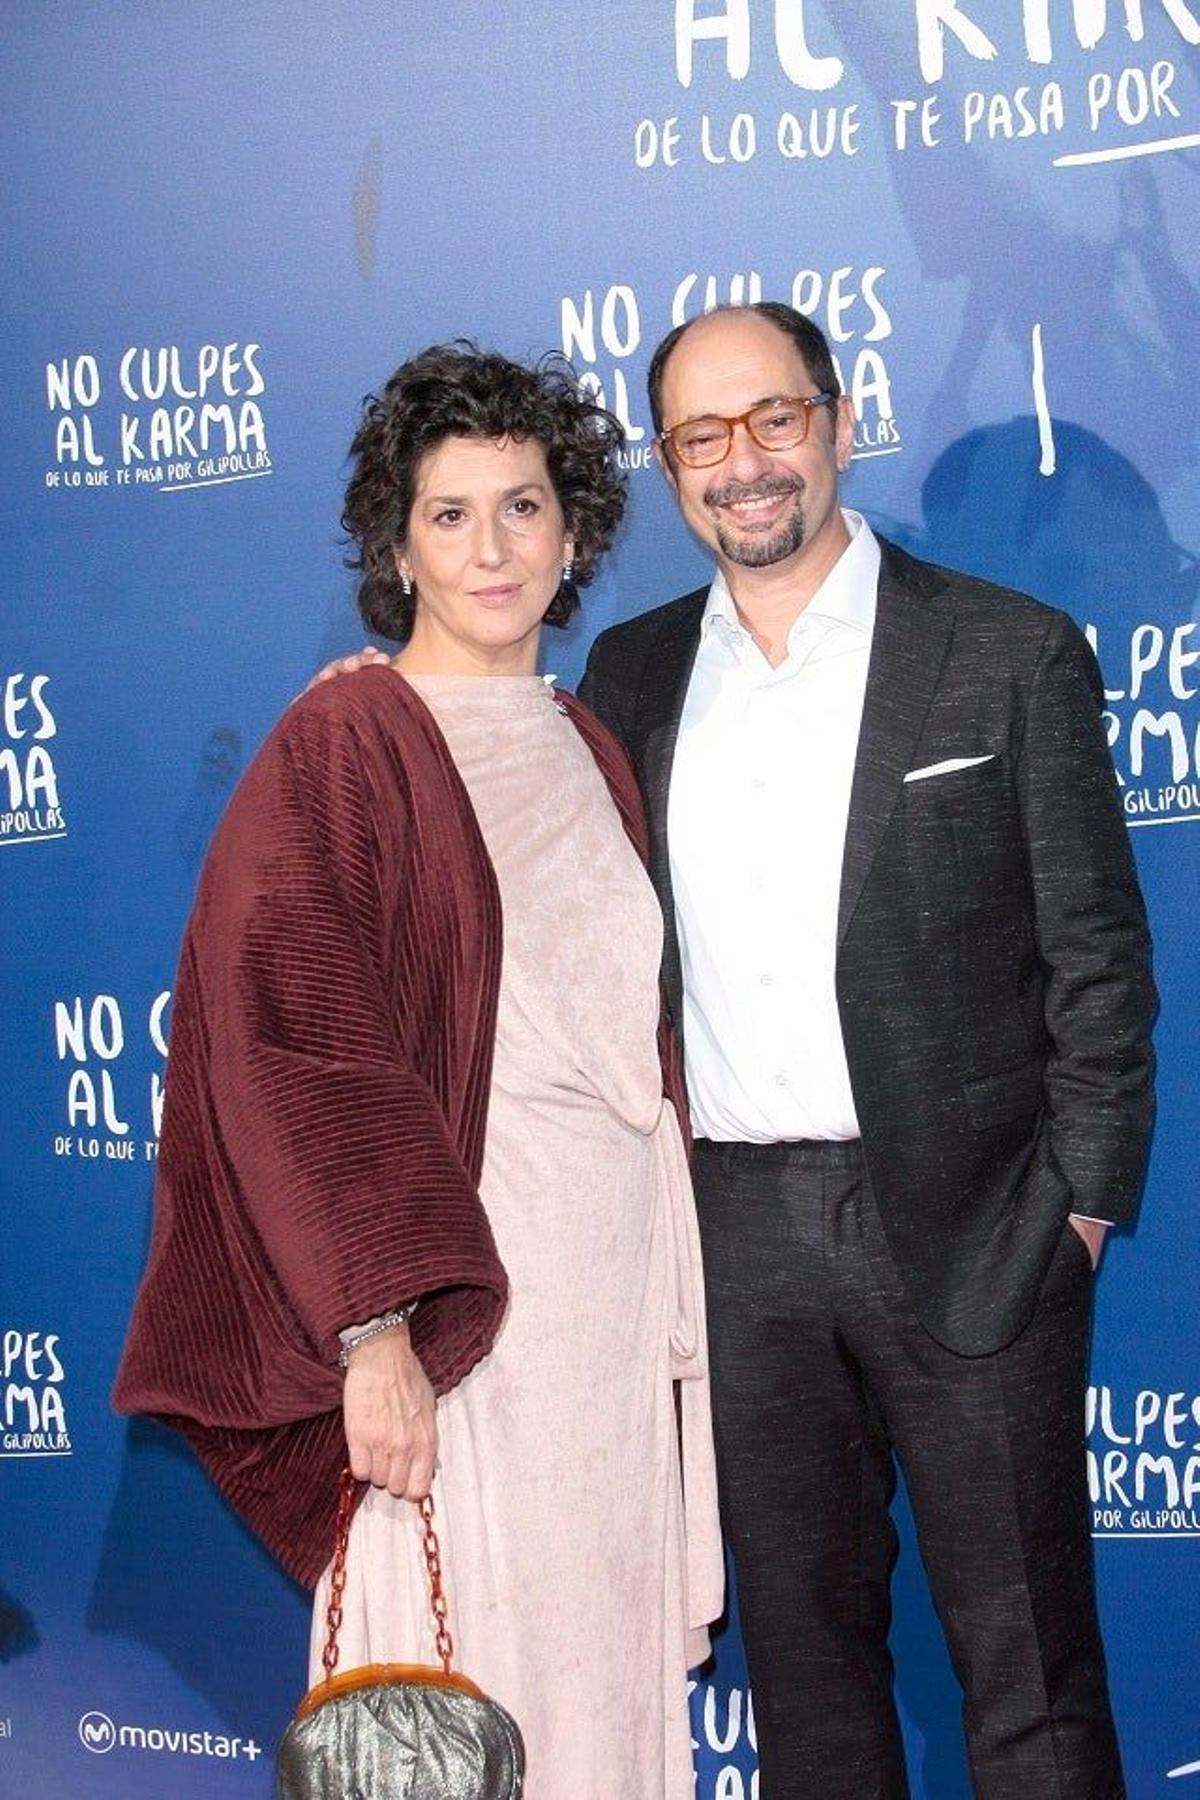 Elvira Mínguez y Jordi Sánchez en el estreno de 'No culpes al karma de lo que te pasa por gilipollas'